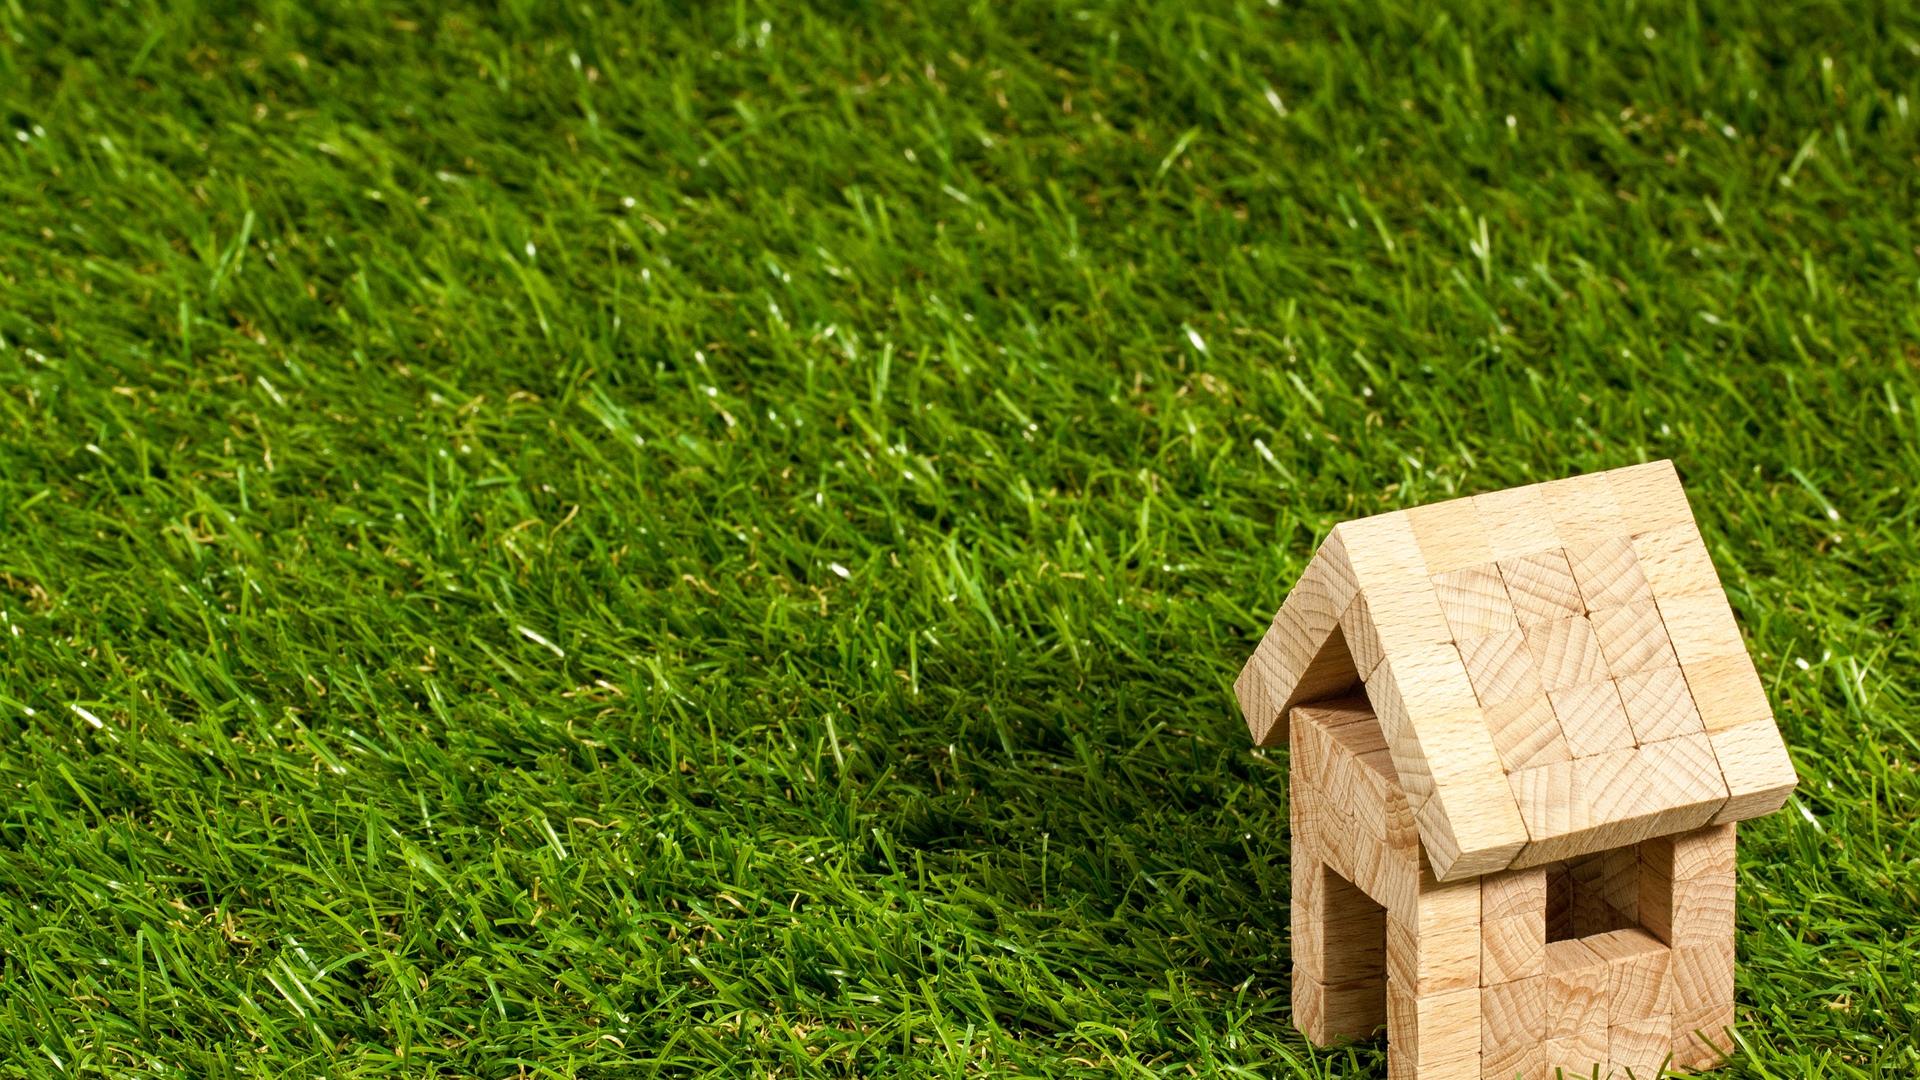 Stimmungsbild zum Beitrag: Es wird ein Modelhaus aus Holz auf Rasen abgebildet.